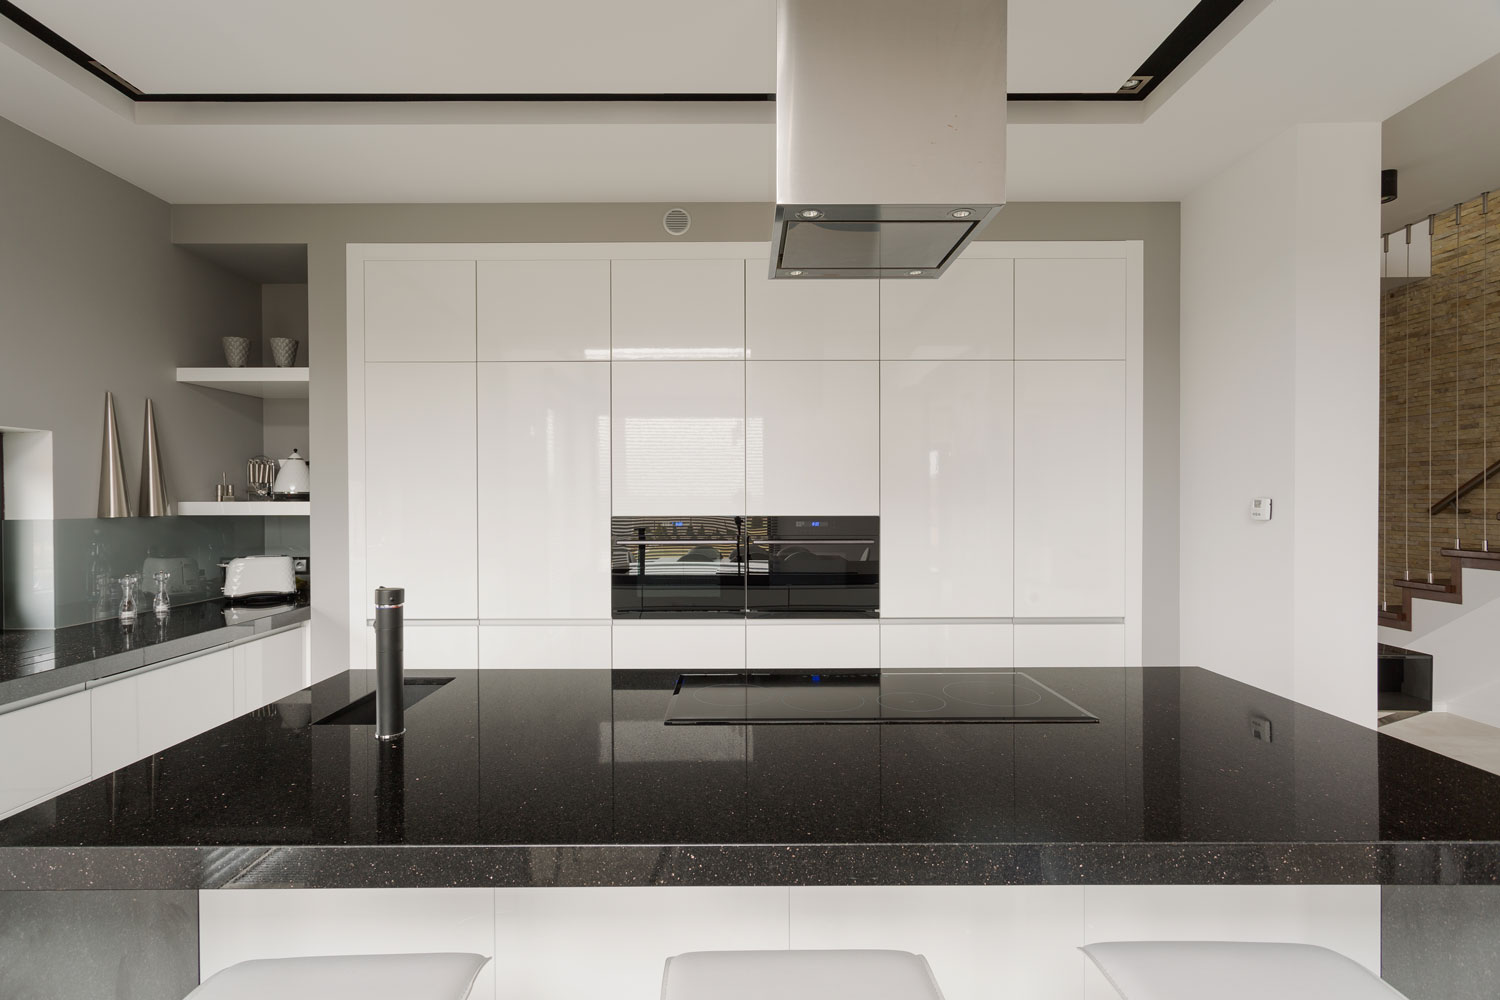 A huge black countertop inside an ultra modern kitchen